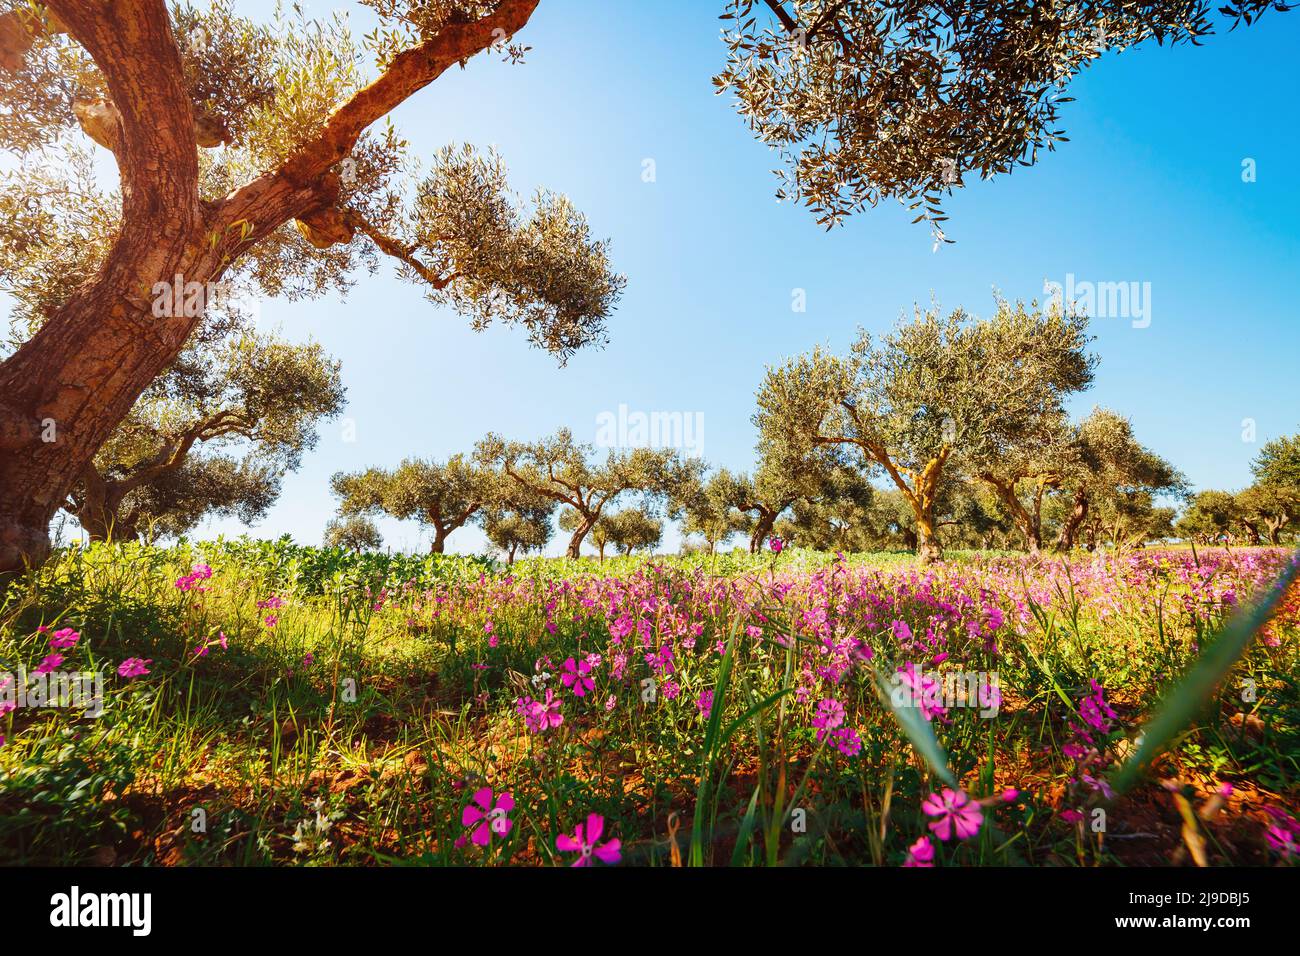 Herrlicher blühender Olivengarten. Malerischer Tag und wunderschöne Szene. Feenwald im Frühling. Lage Insel Sicilia, Italien, Europa. Kreativ na Stockfoto